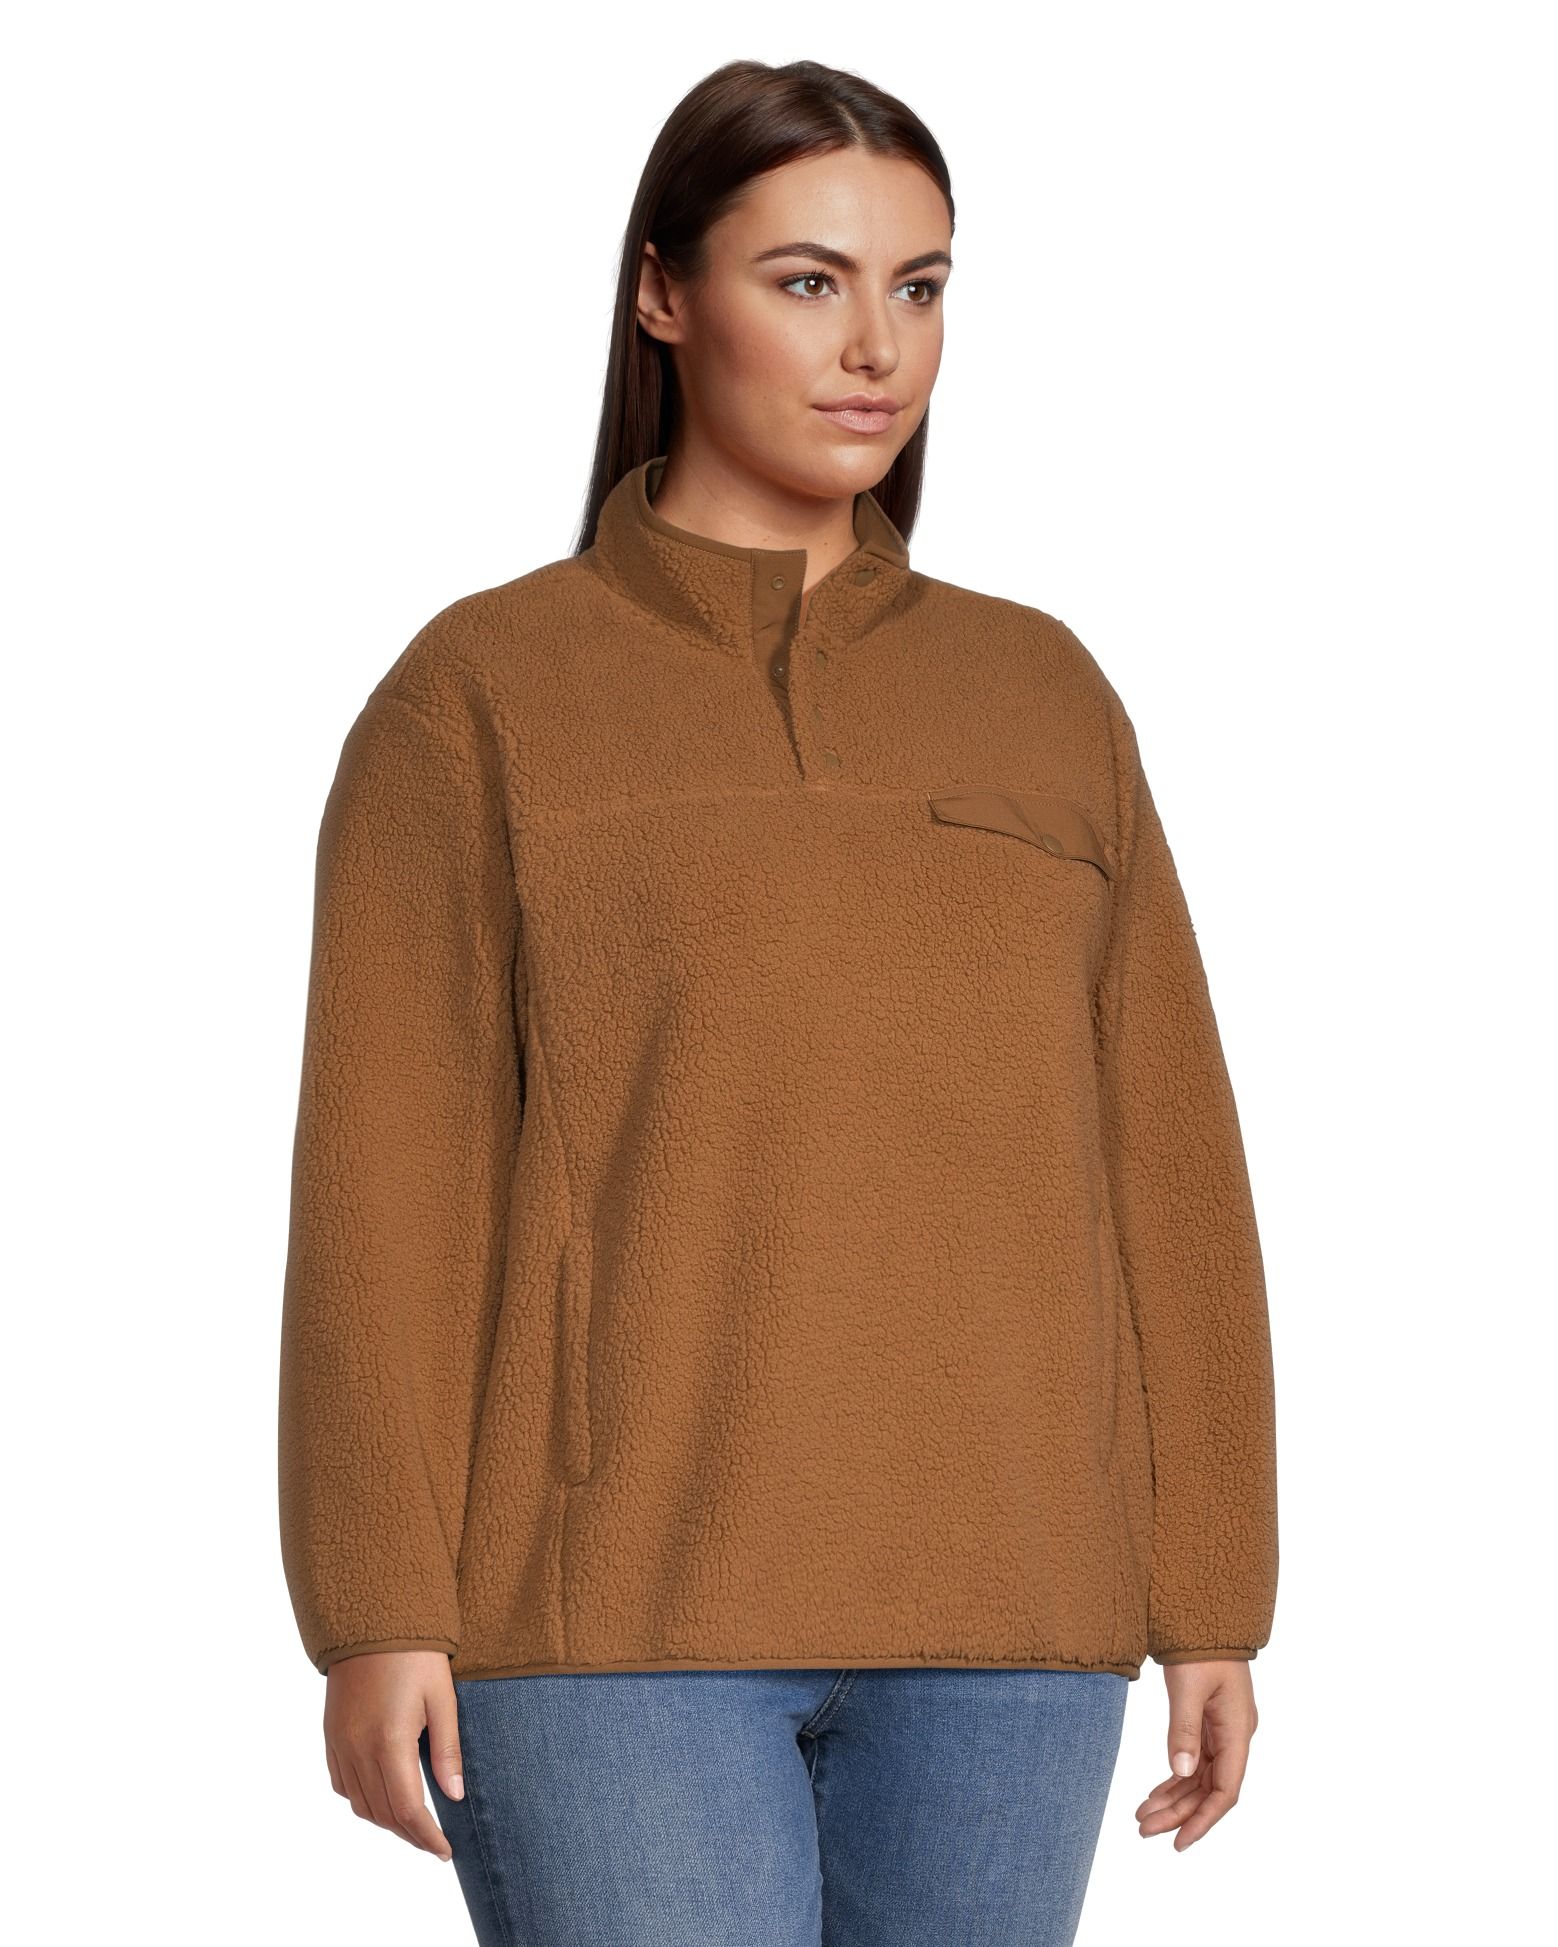 Snap Fleece Pullover 2.0 – Level 1